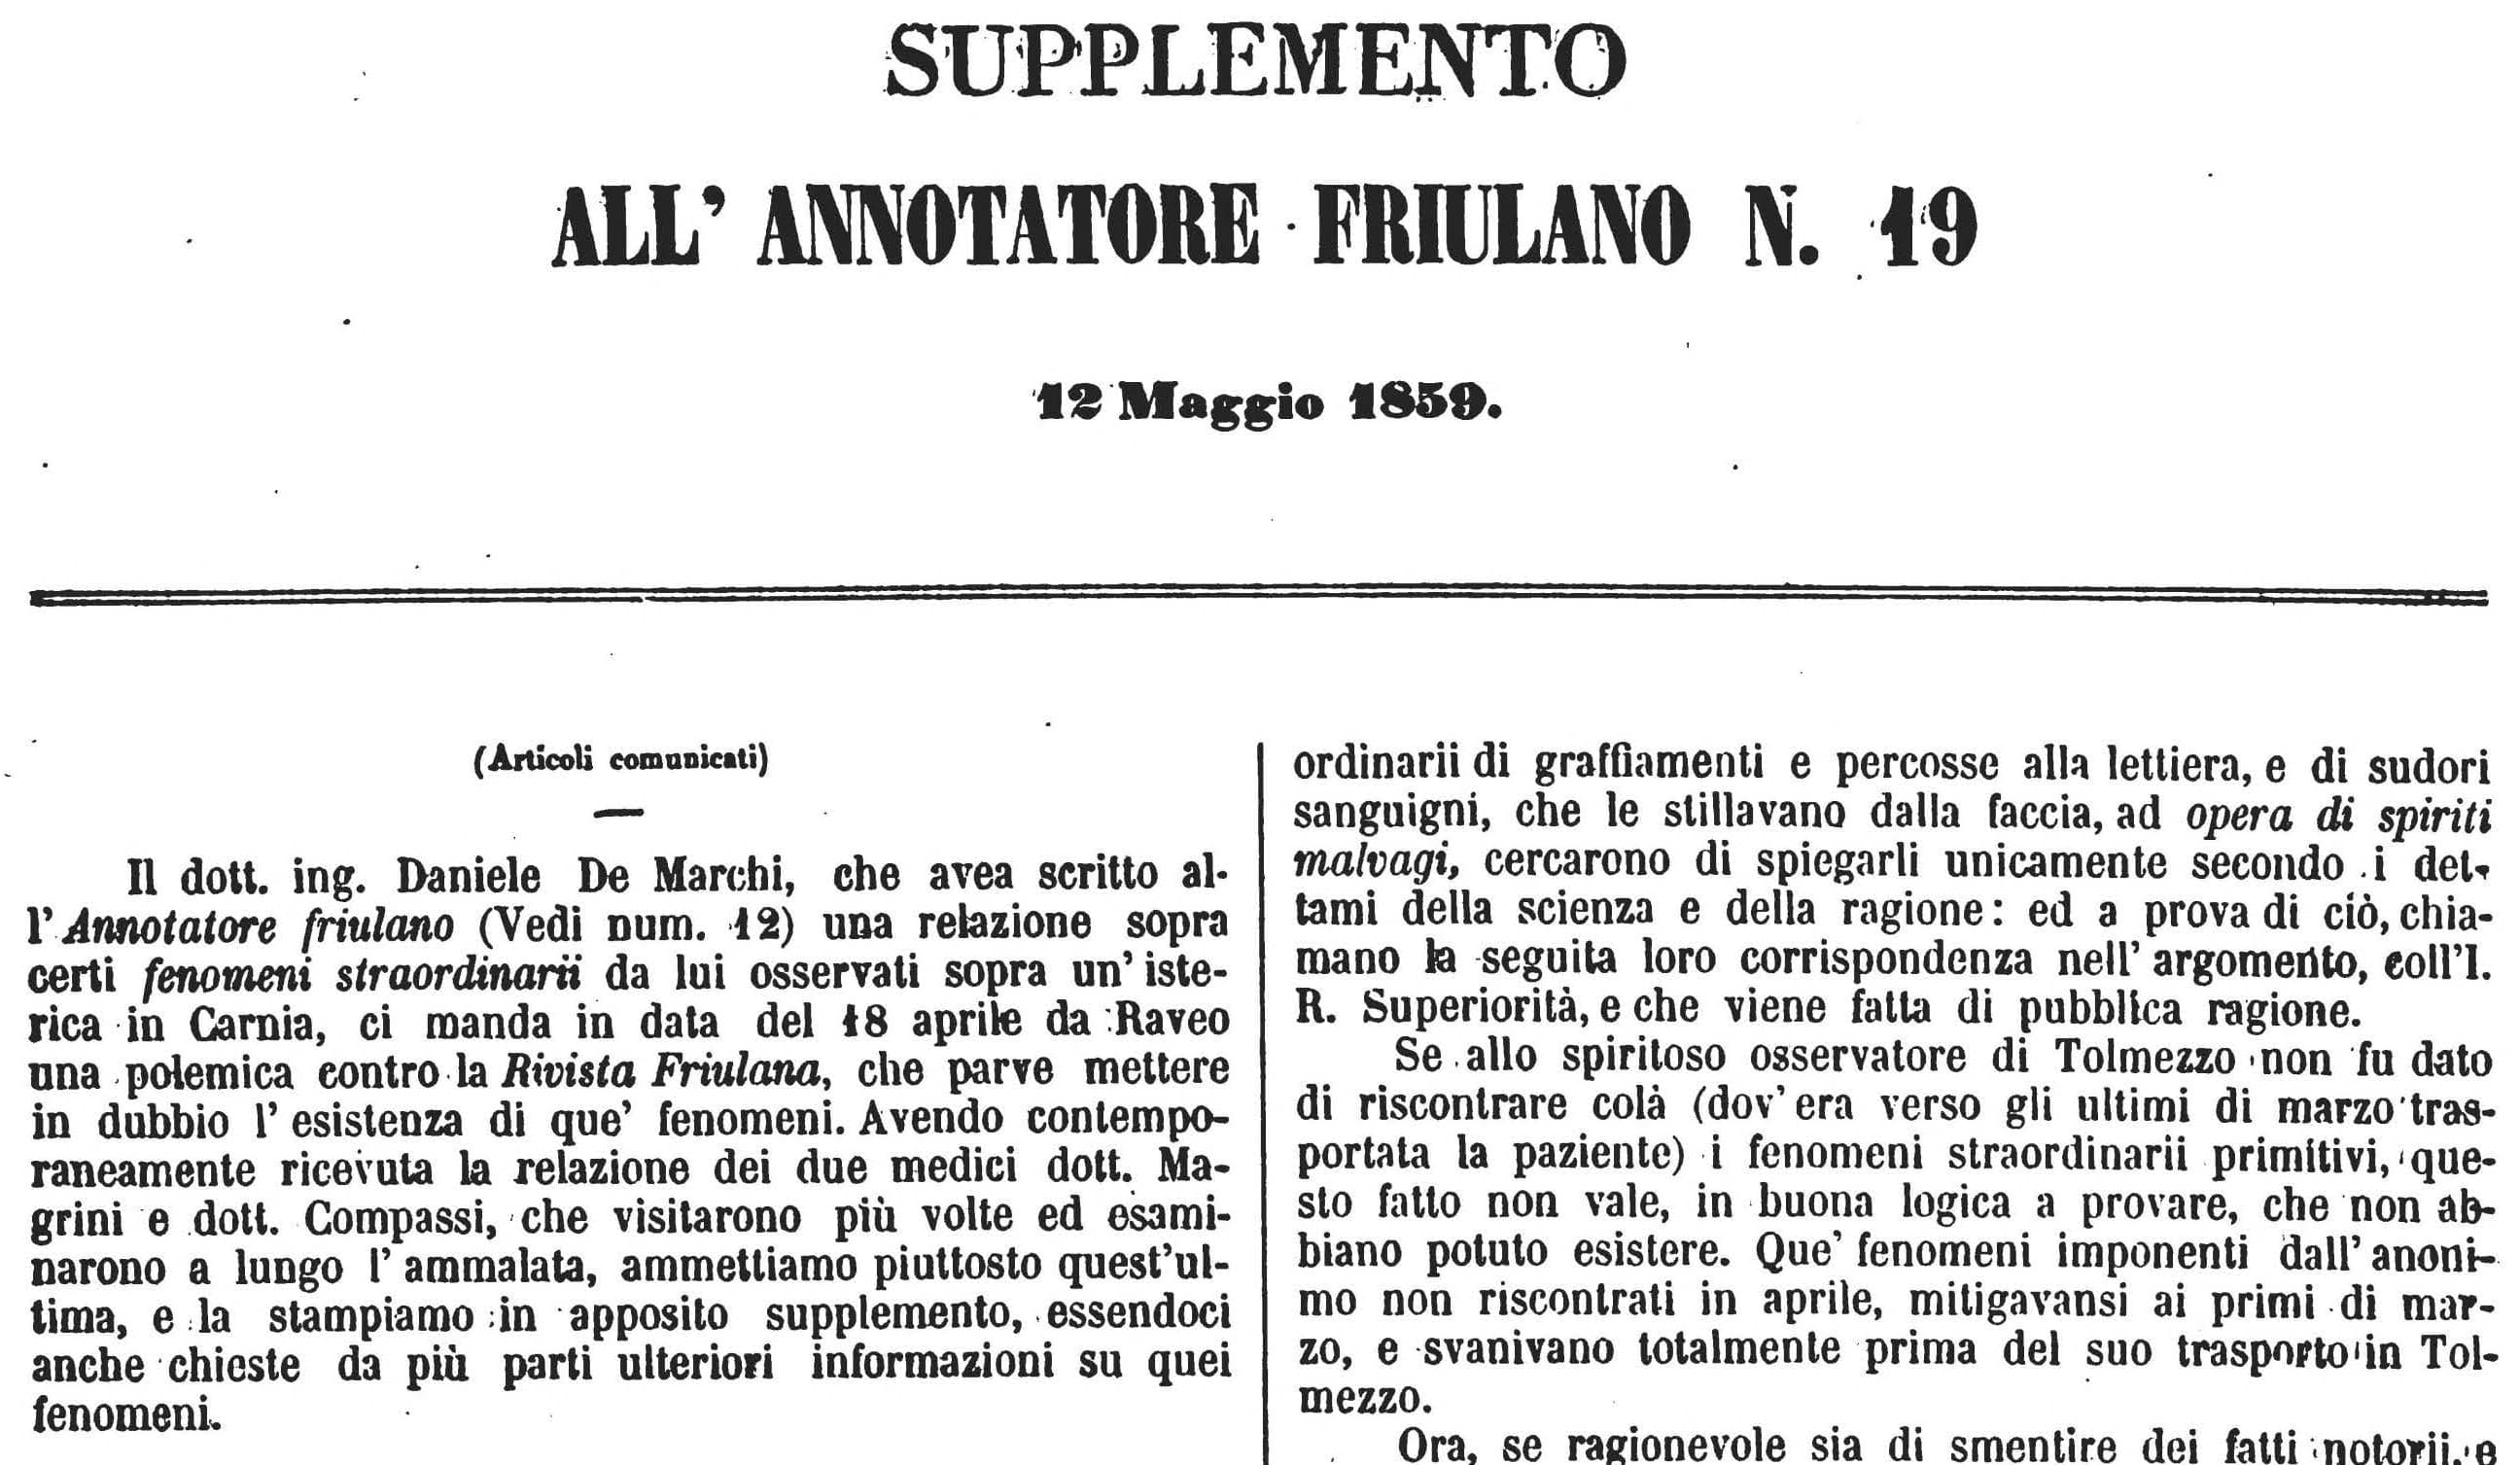 Supplemento all'«Annotatore Friulano» n. 19 del 12 maggio 1859